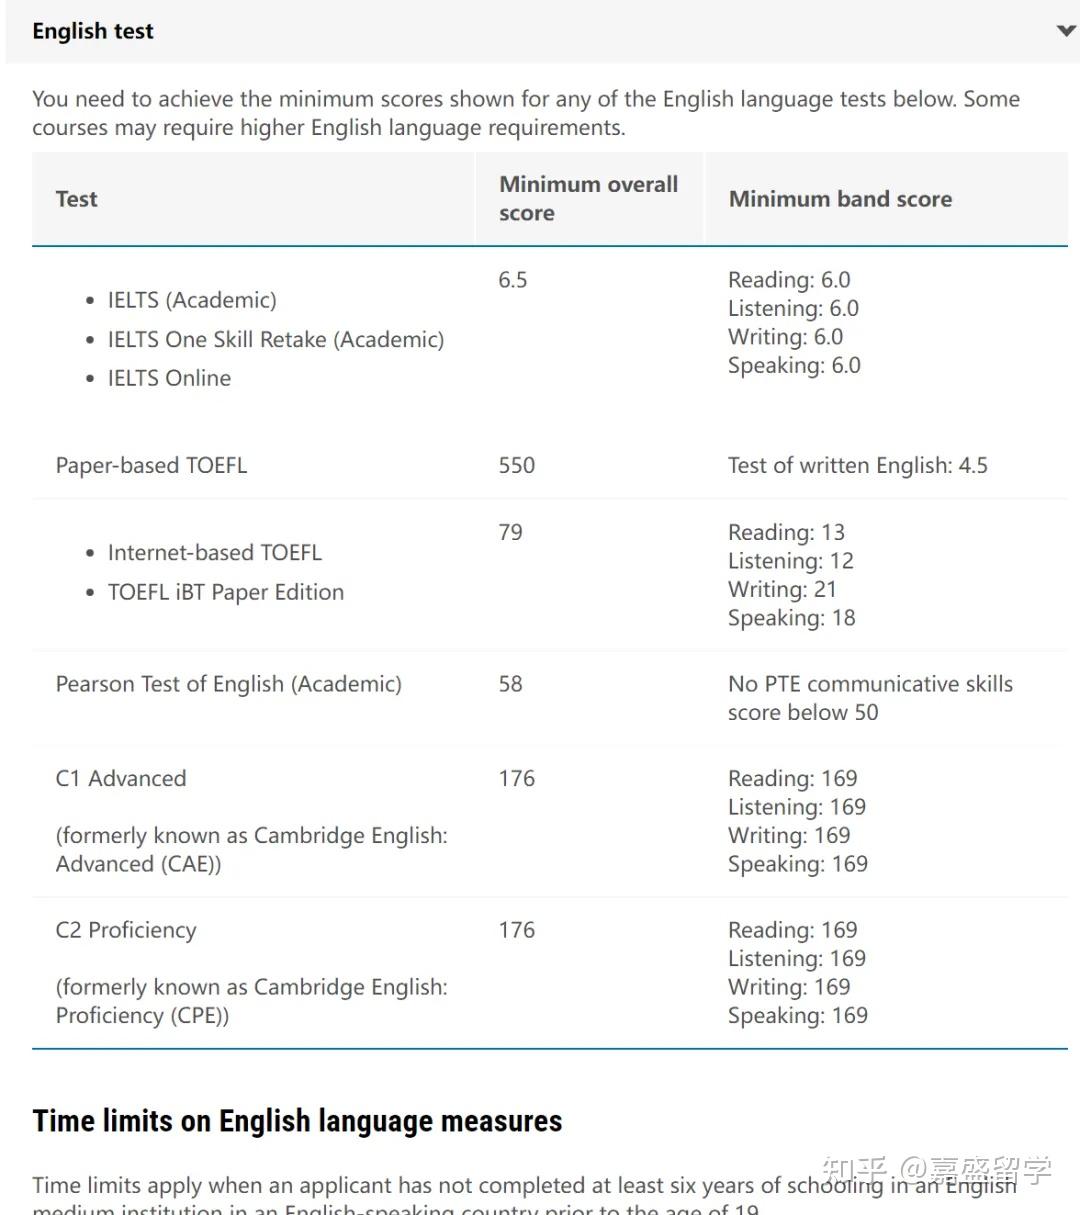 73蒙纳士大学认可的语言考试74 雅思(学术类)和雅思online,接受